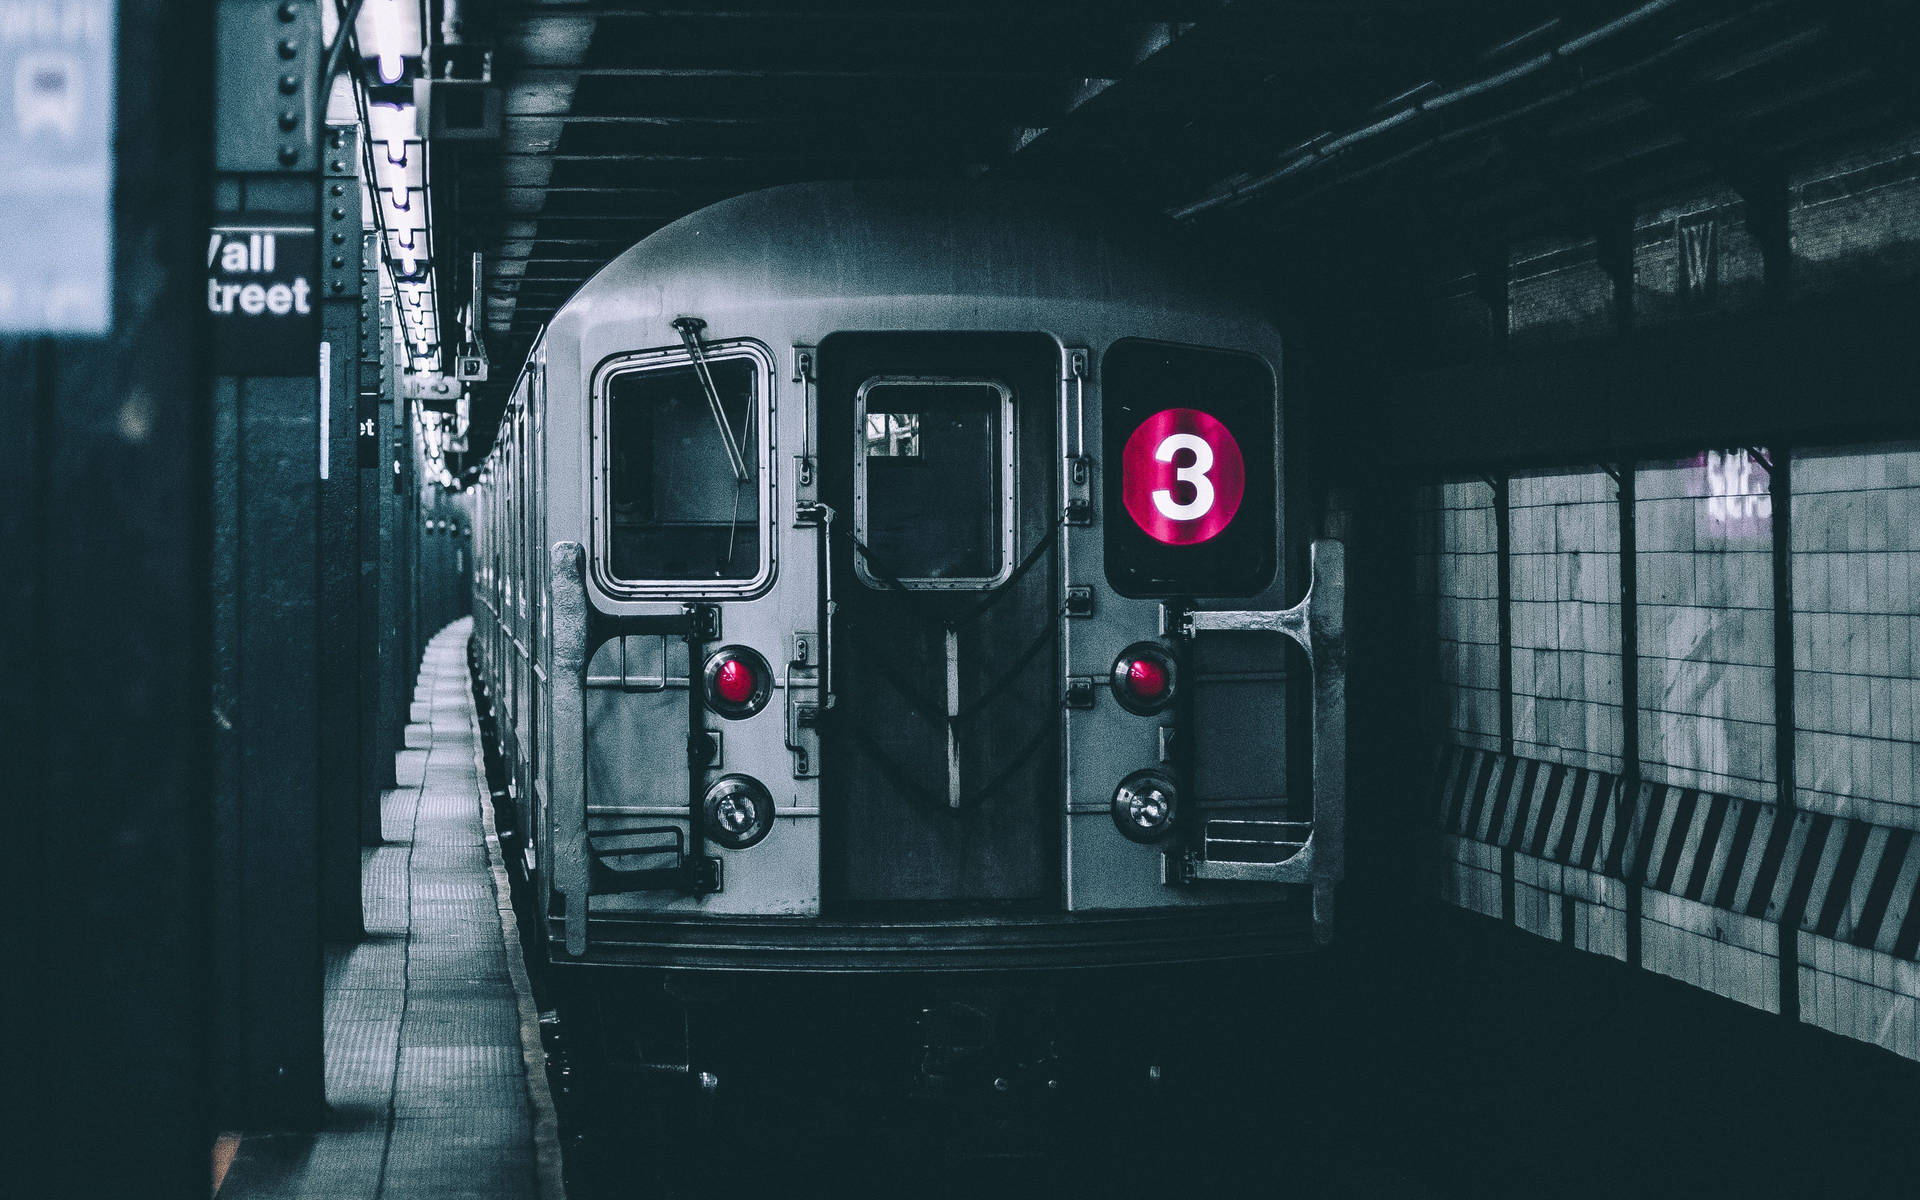 New York City Underground Subway Train Wallpaper